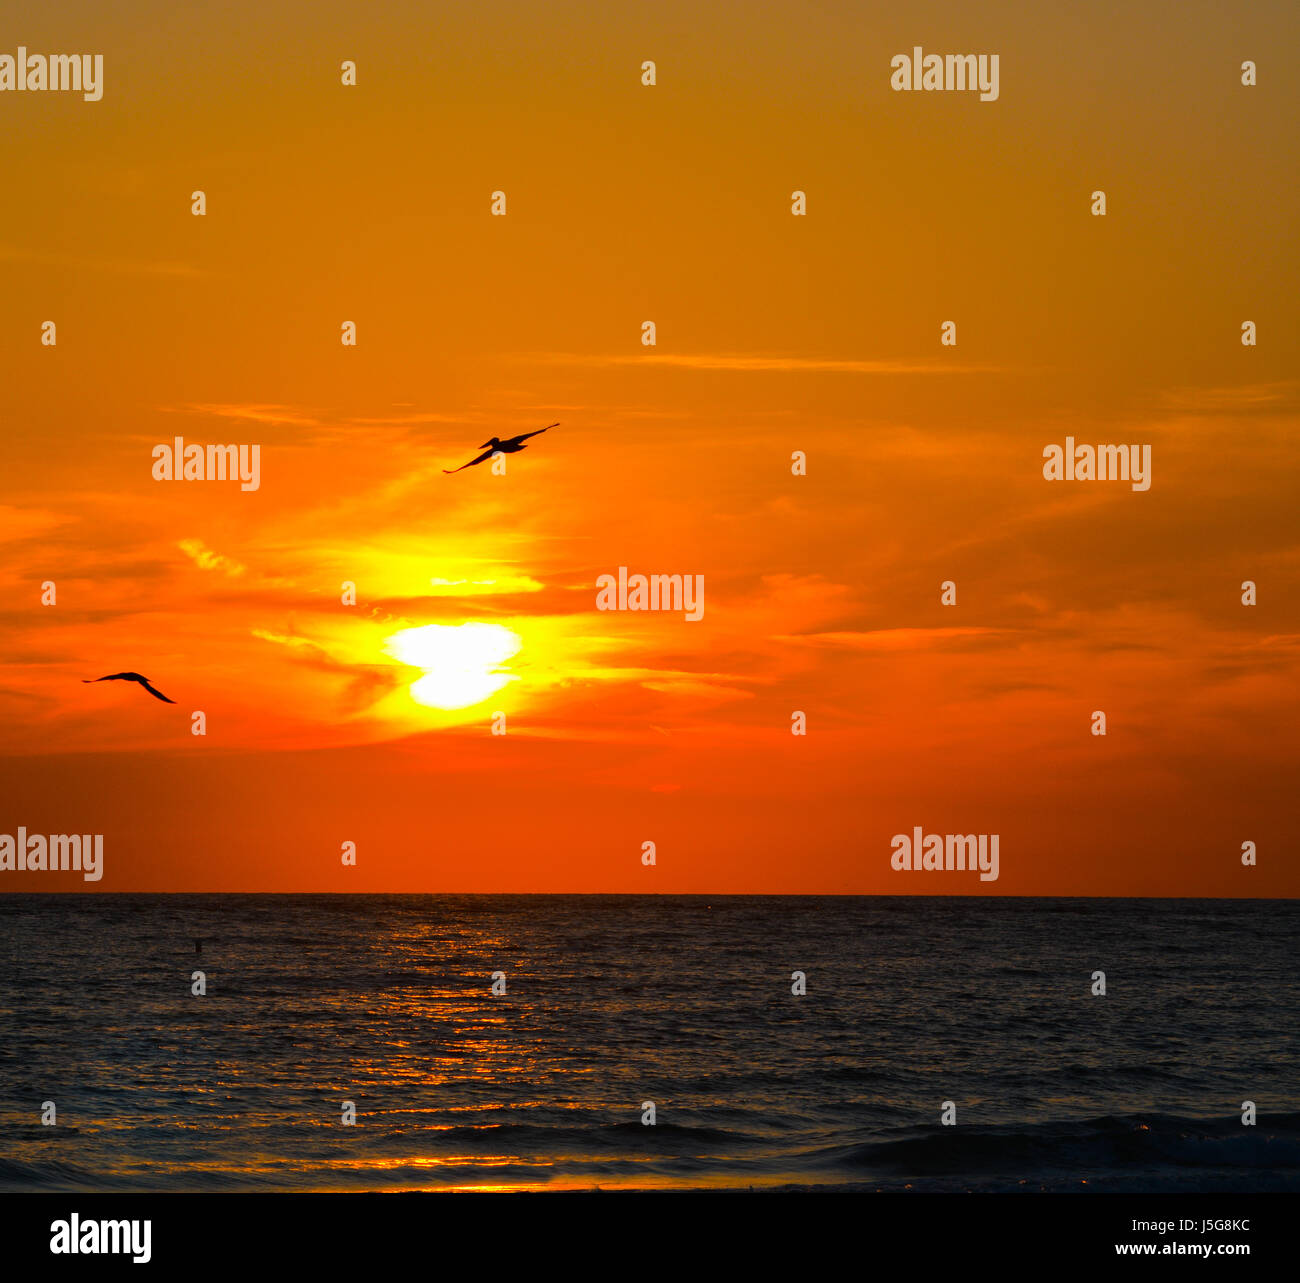 Herrlichen Sonnenuntergang am St. Pete Beach am Golf von Mexiko in Florida. Stockfoto